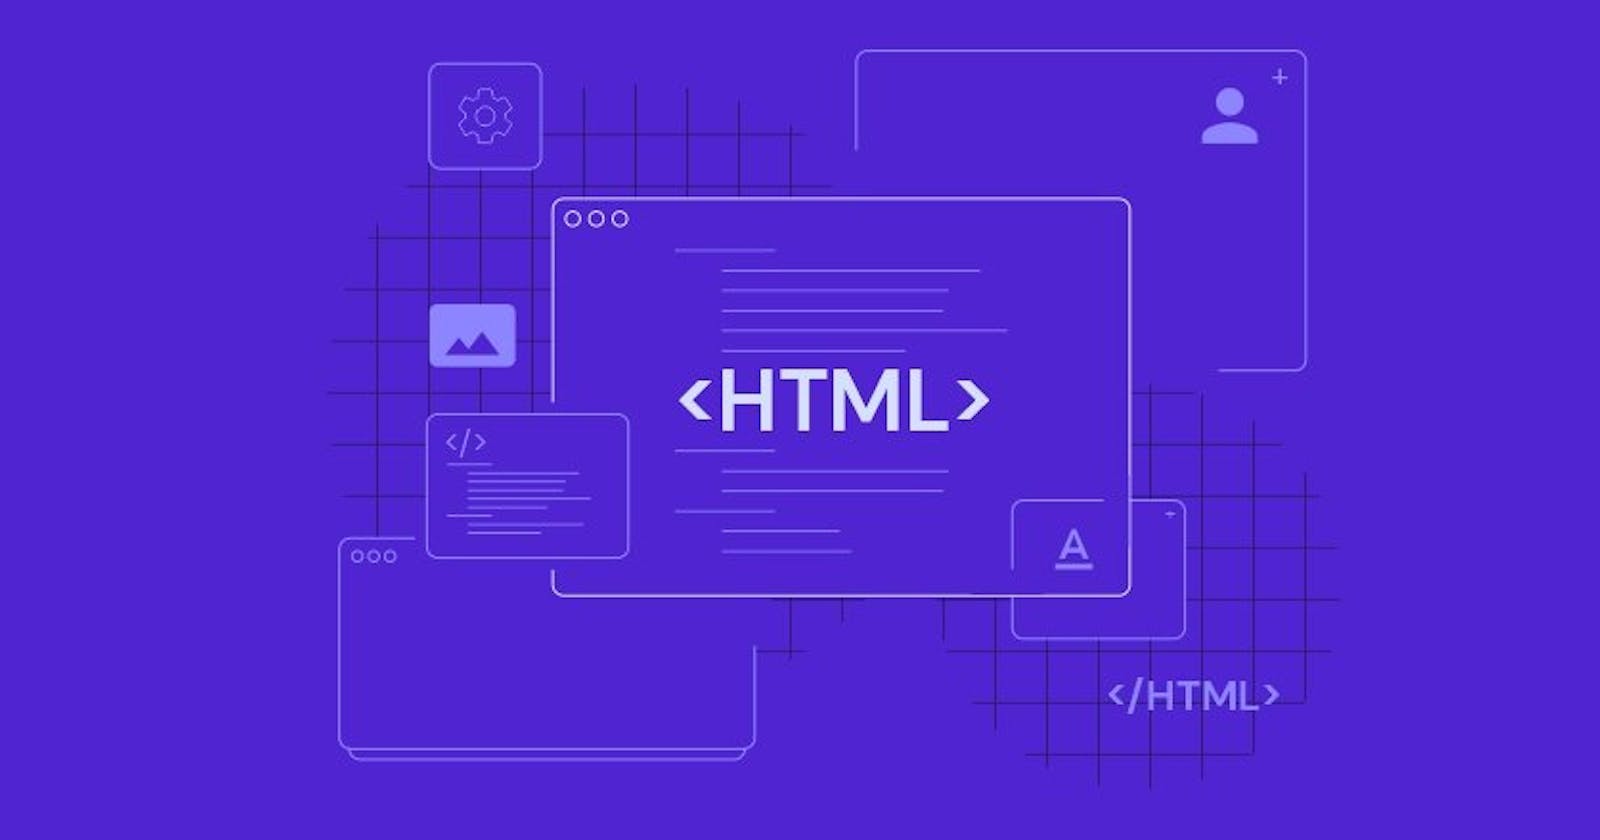 Basic HTML guide